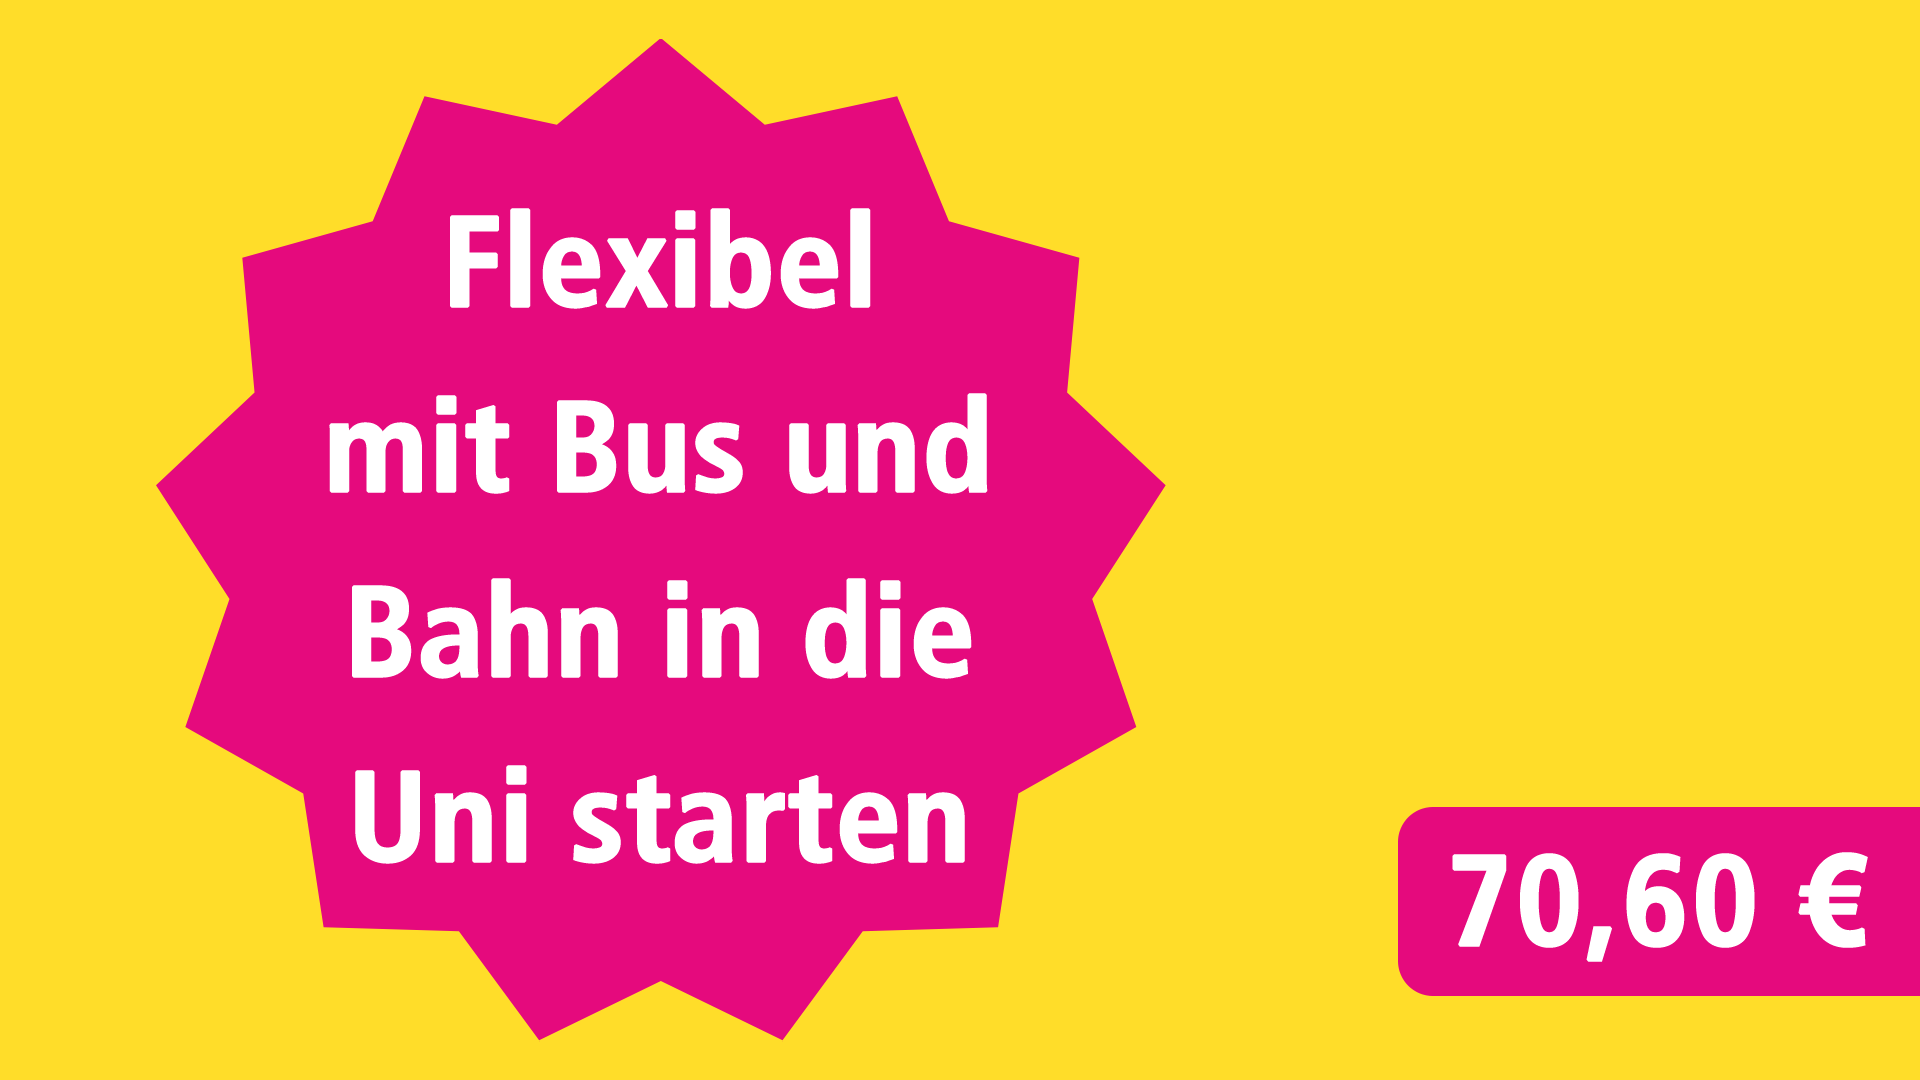 Flexibel mit Bus und Bahn in die Uni starten für 70,60 €